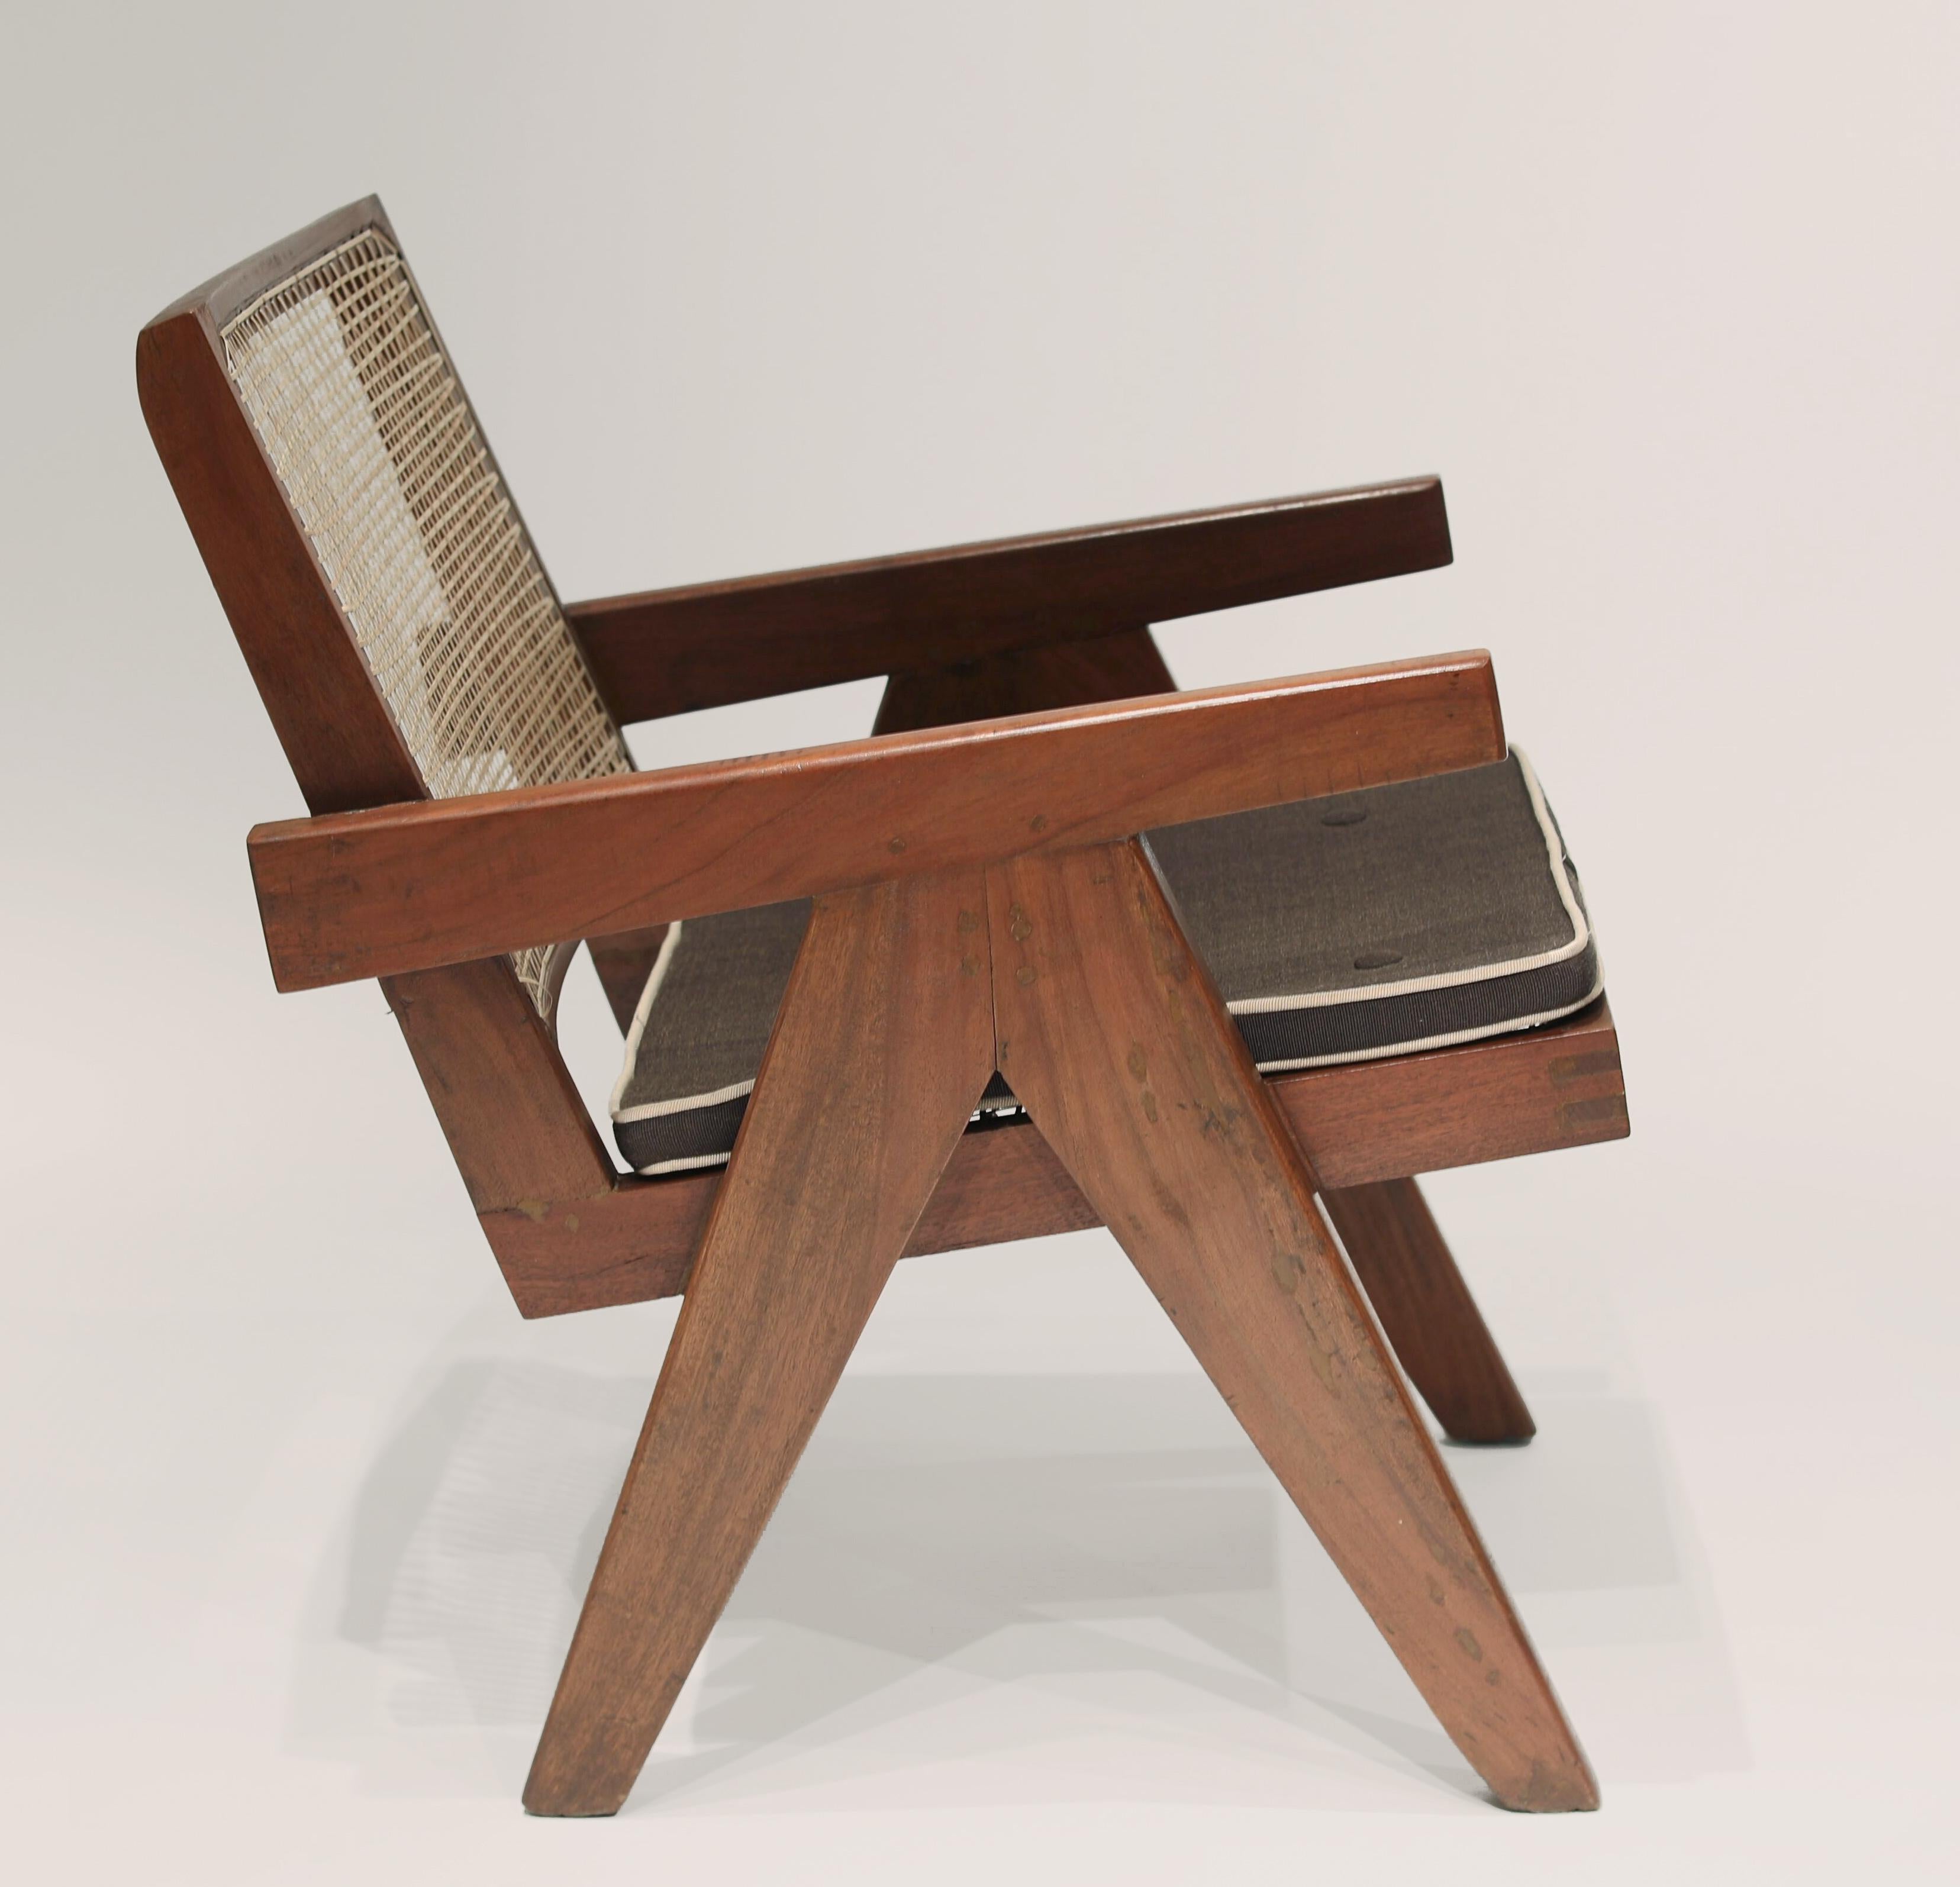 Paar Pierre Jeanneret 'Easy Chairs' (Modell PJ-SI-29-A) aus Verwaltungsgebäuden, Chandigarh Indien, um 1955. (Literatur: Touchaleeaume und Moreau, Le Corbusier Pierre Jeanneret: Das indische Abenteuer, Design - Kunst - Architektur.).
 